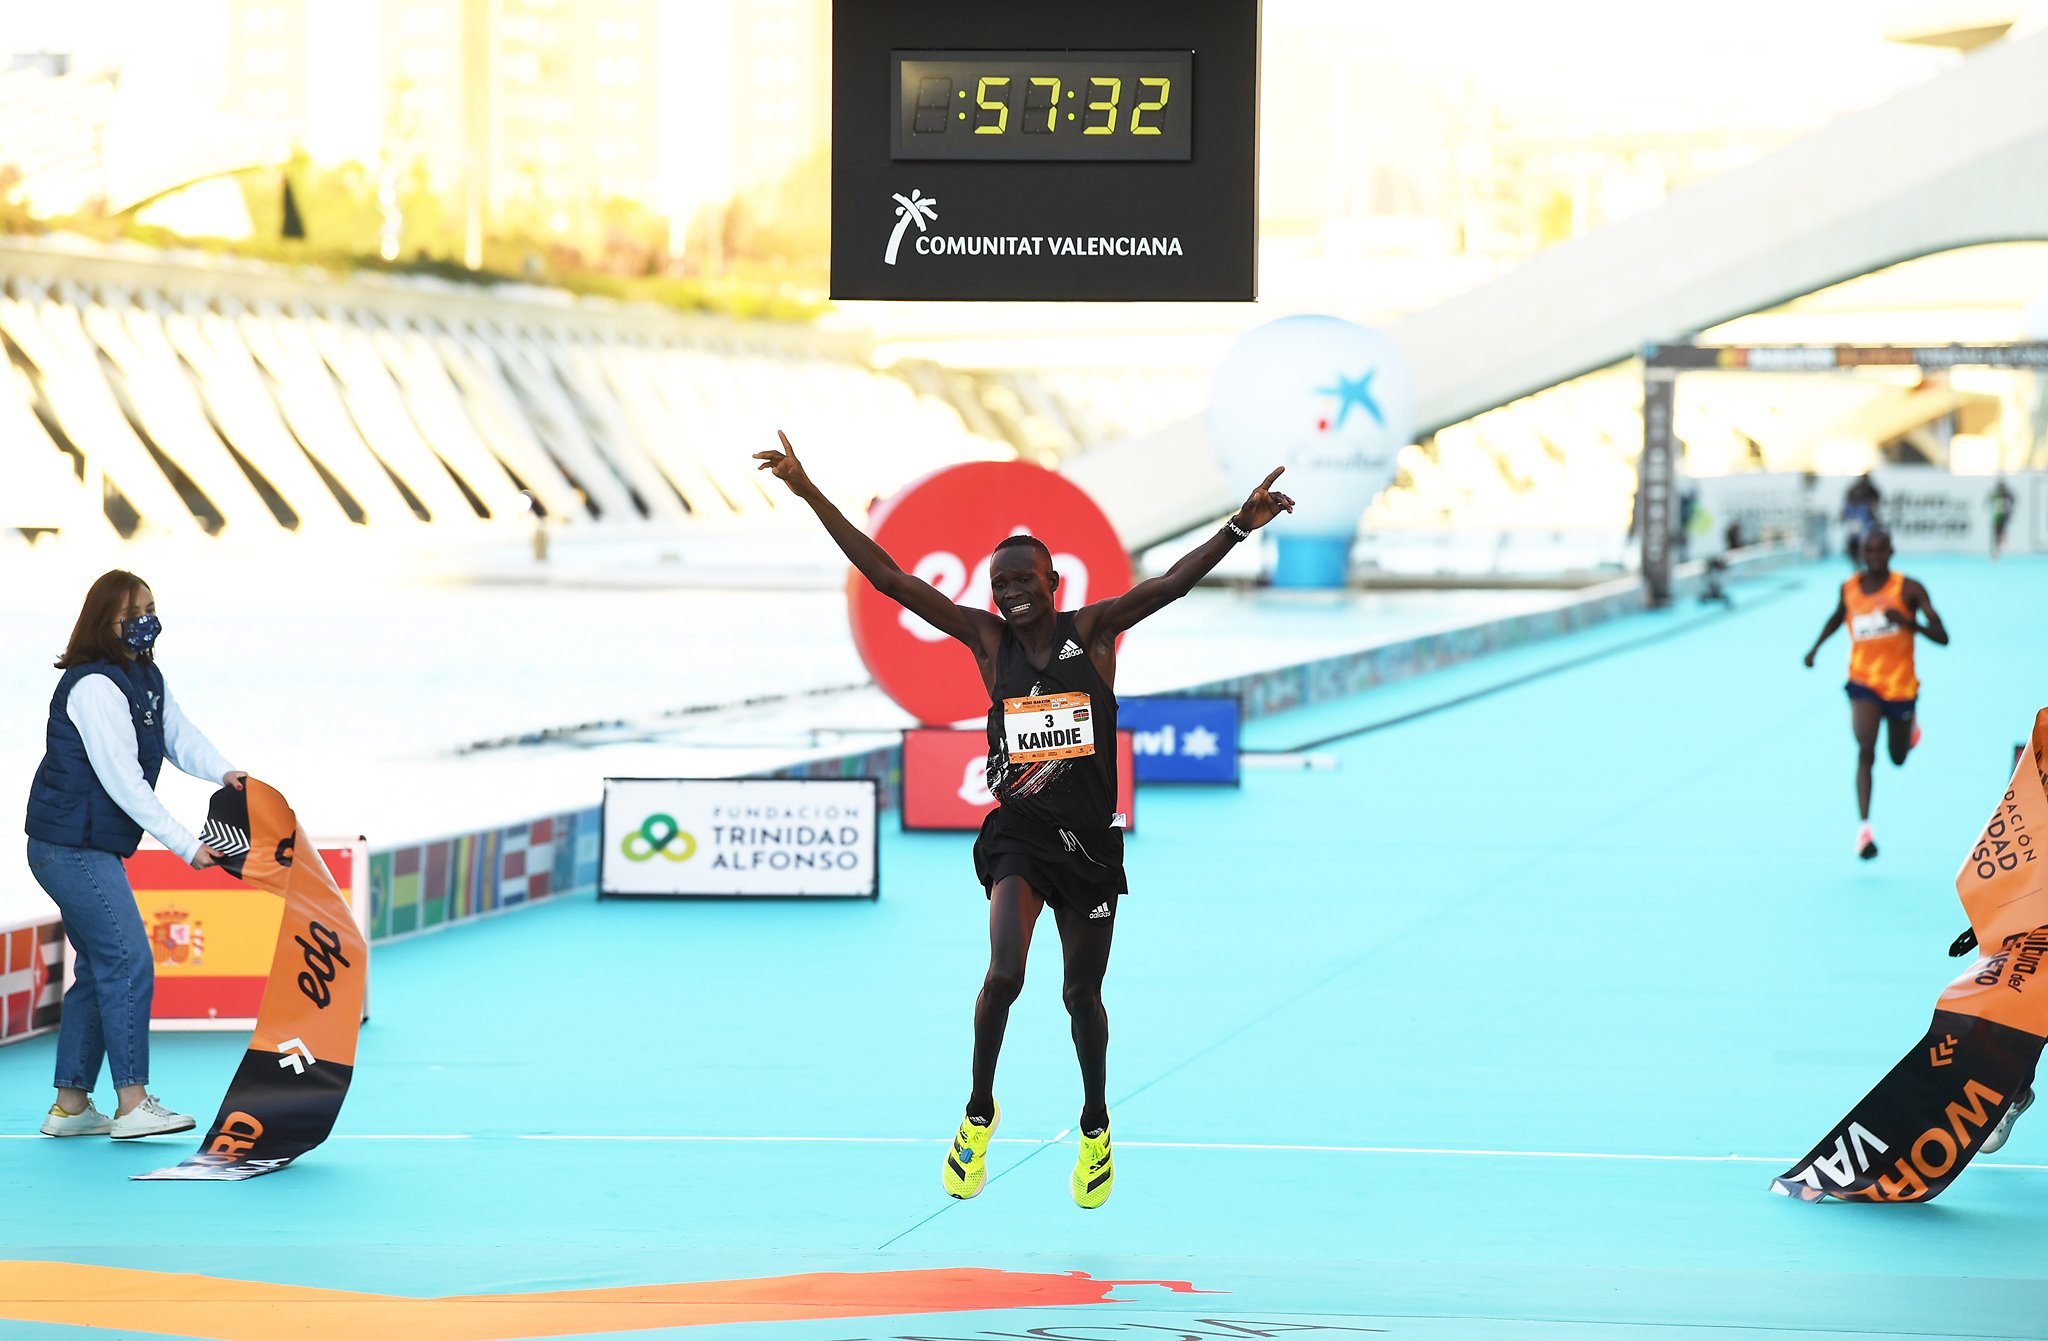 為2020 的跑道上刻寫歷史性一刻。Kandie kibiwott  成為最新的半馬拉松紀錄保持者。 ⏱ 57:32 👟: Adizero Adios Pro —...